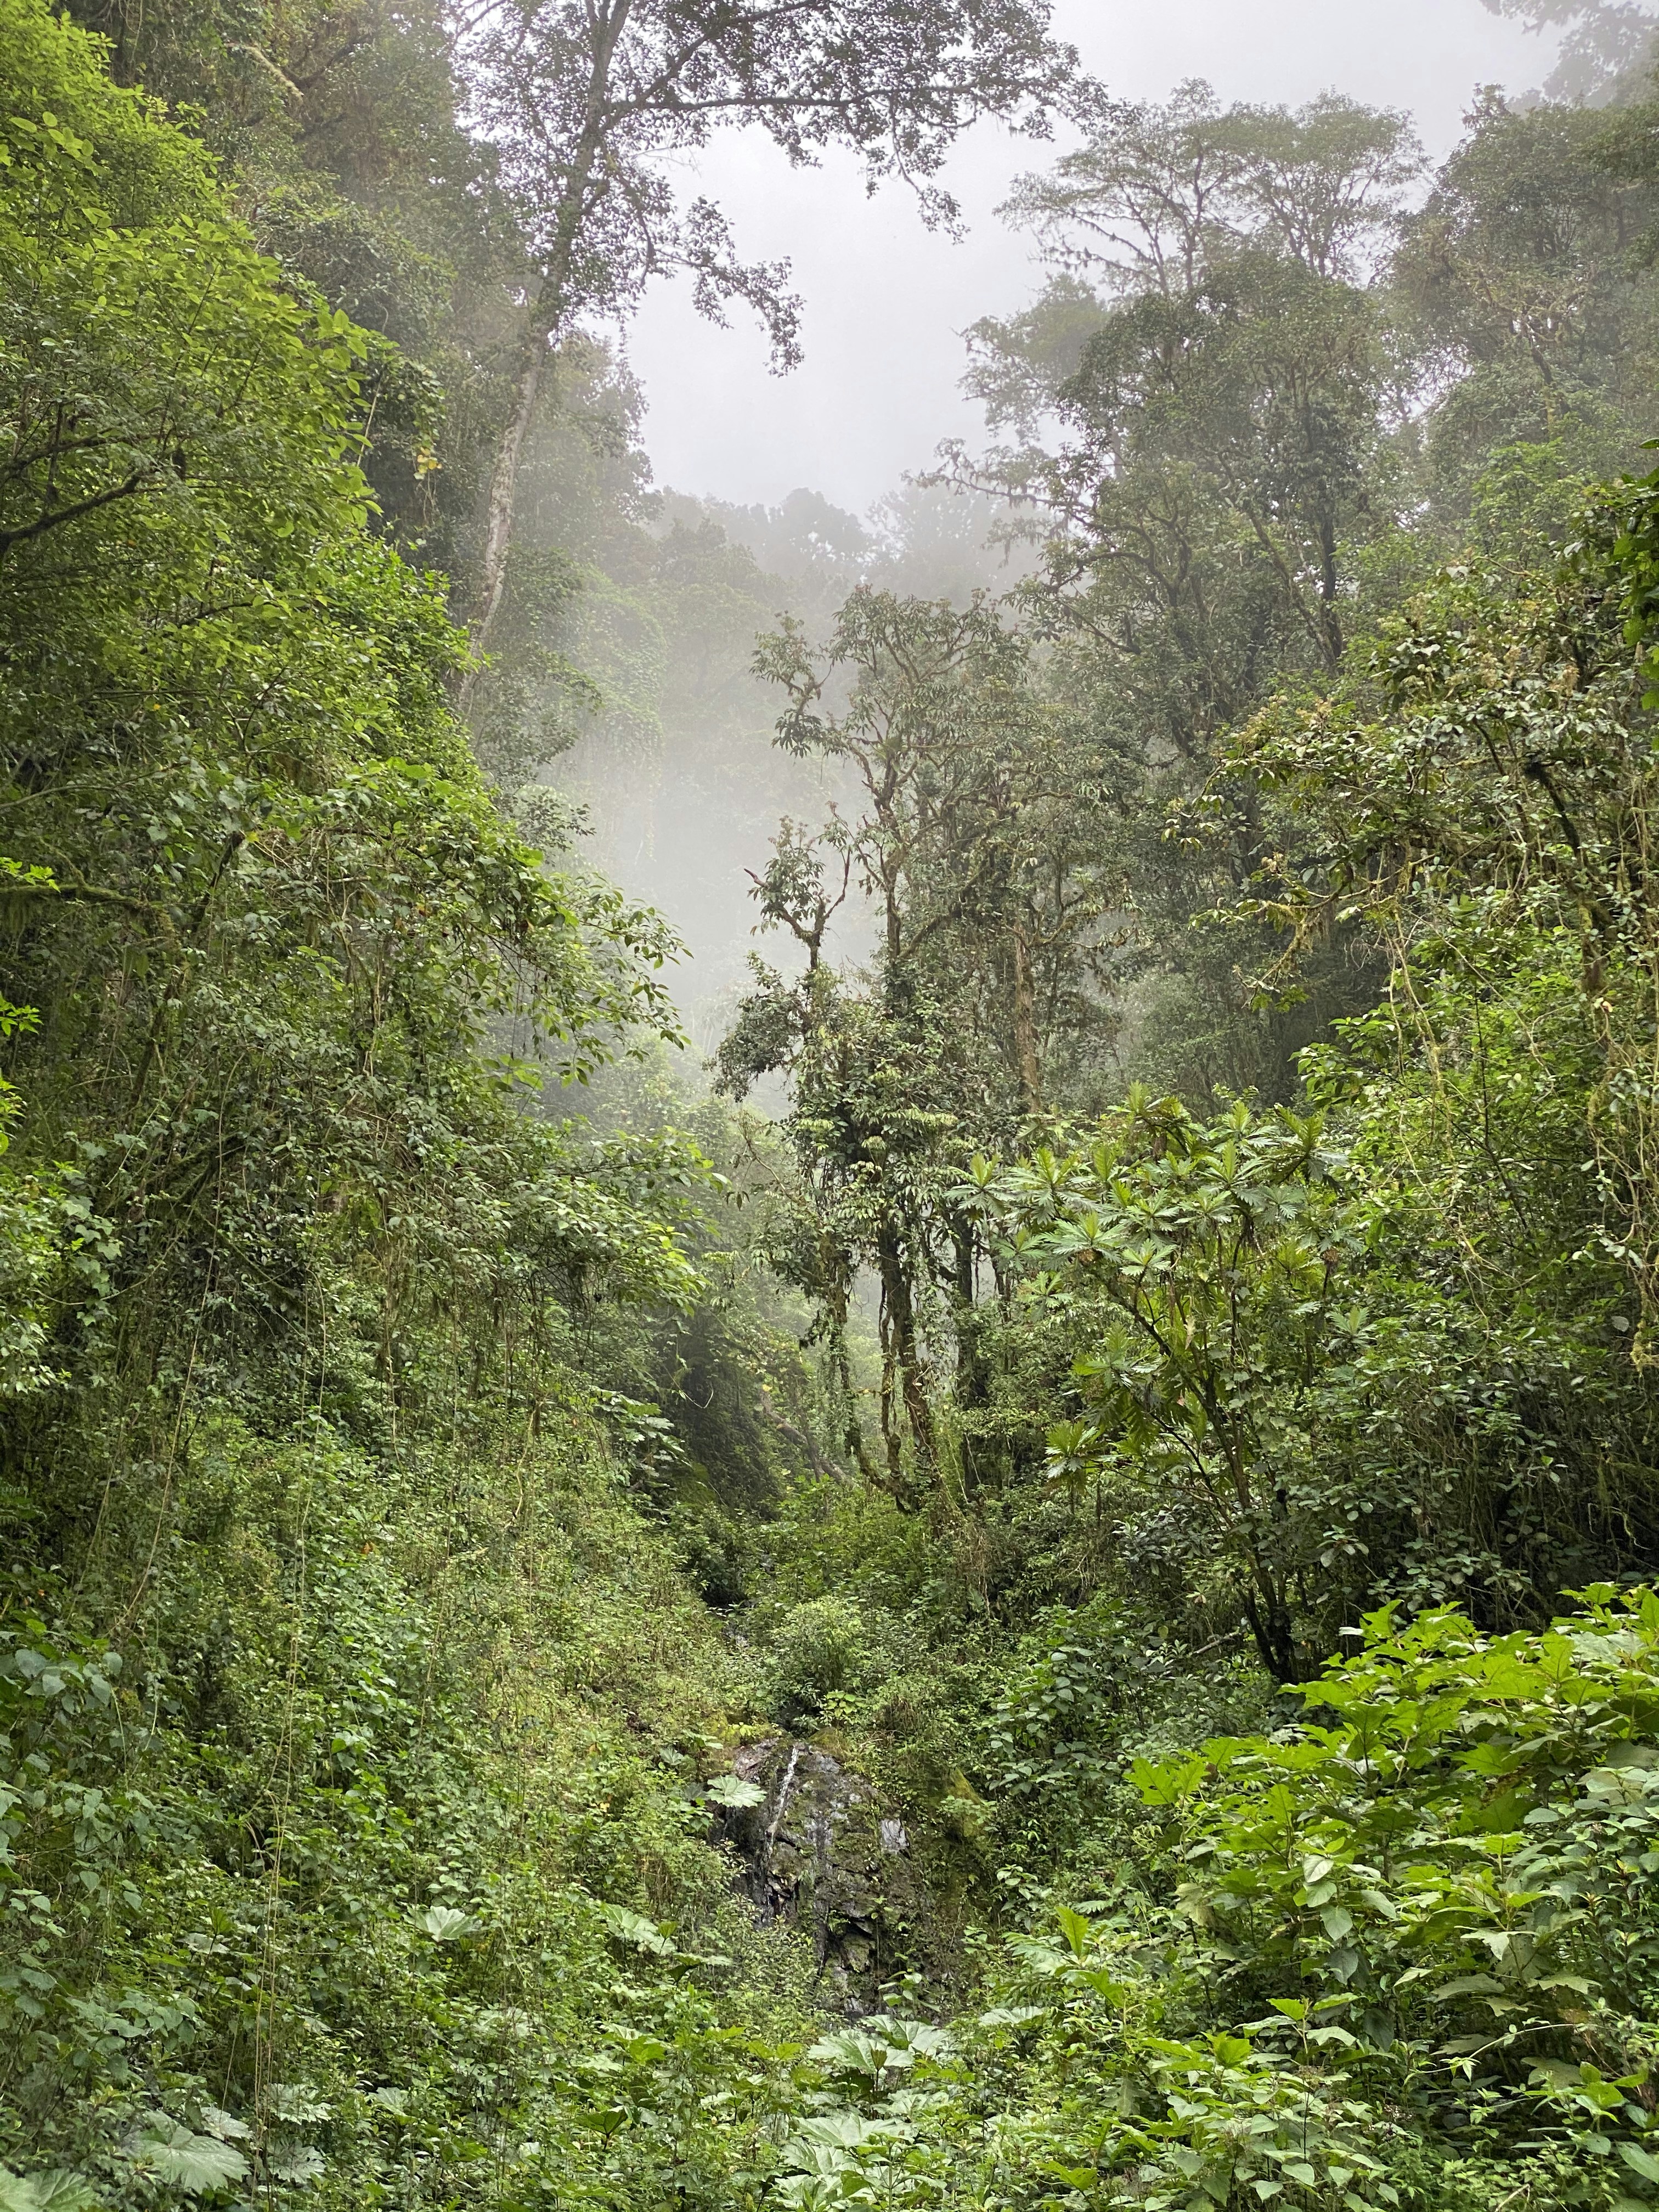 Cloud forest in Dota, Costa Rica.